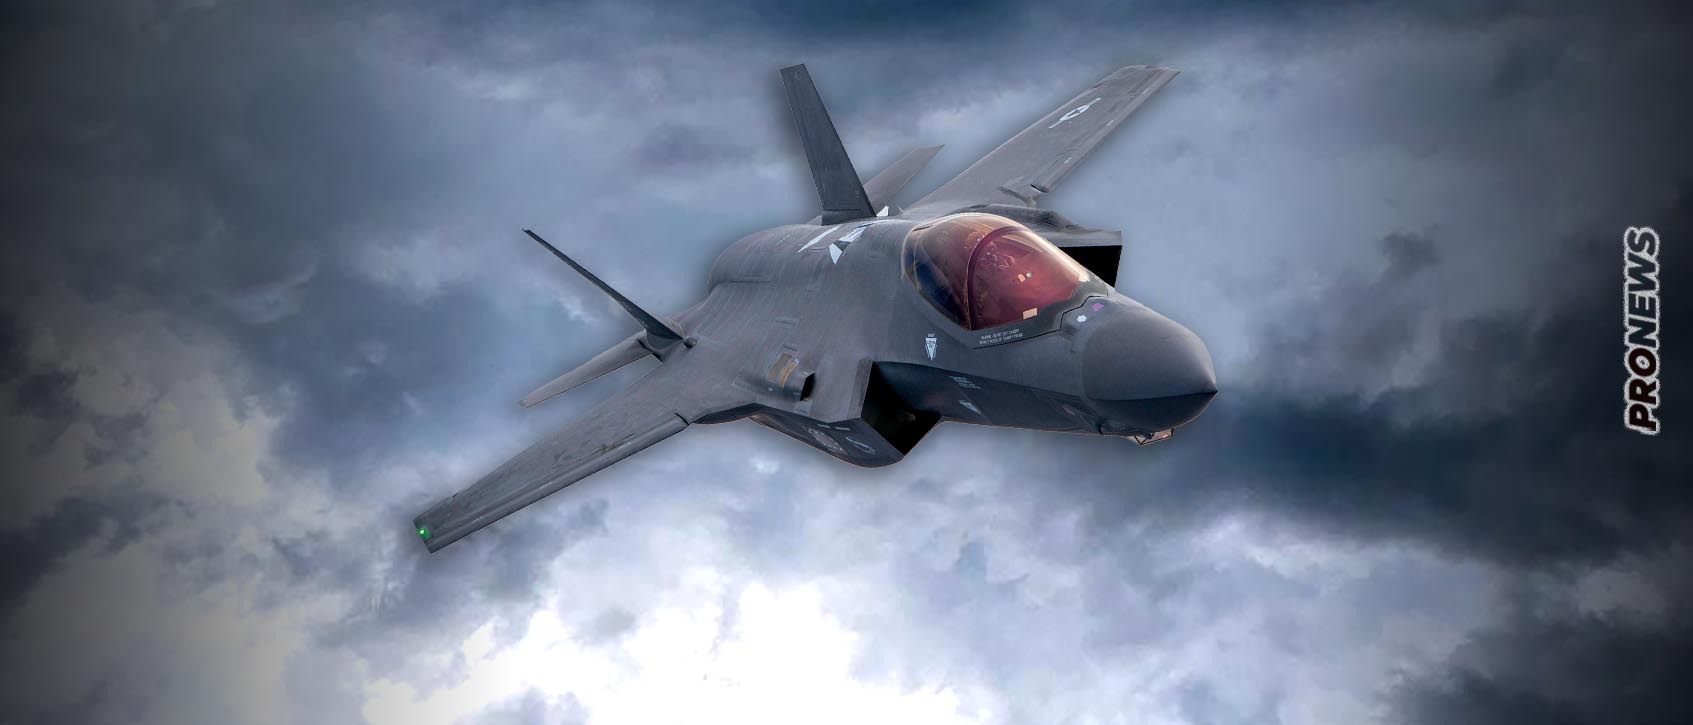 Αδιανόητο: Θέλουν να αγοράσουν F-35 για την ΠΑ χωρίς σύμβαση υποδομών και υποστήριξης! – Επικίνδυνοι…